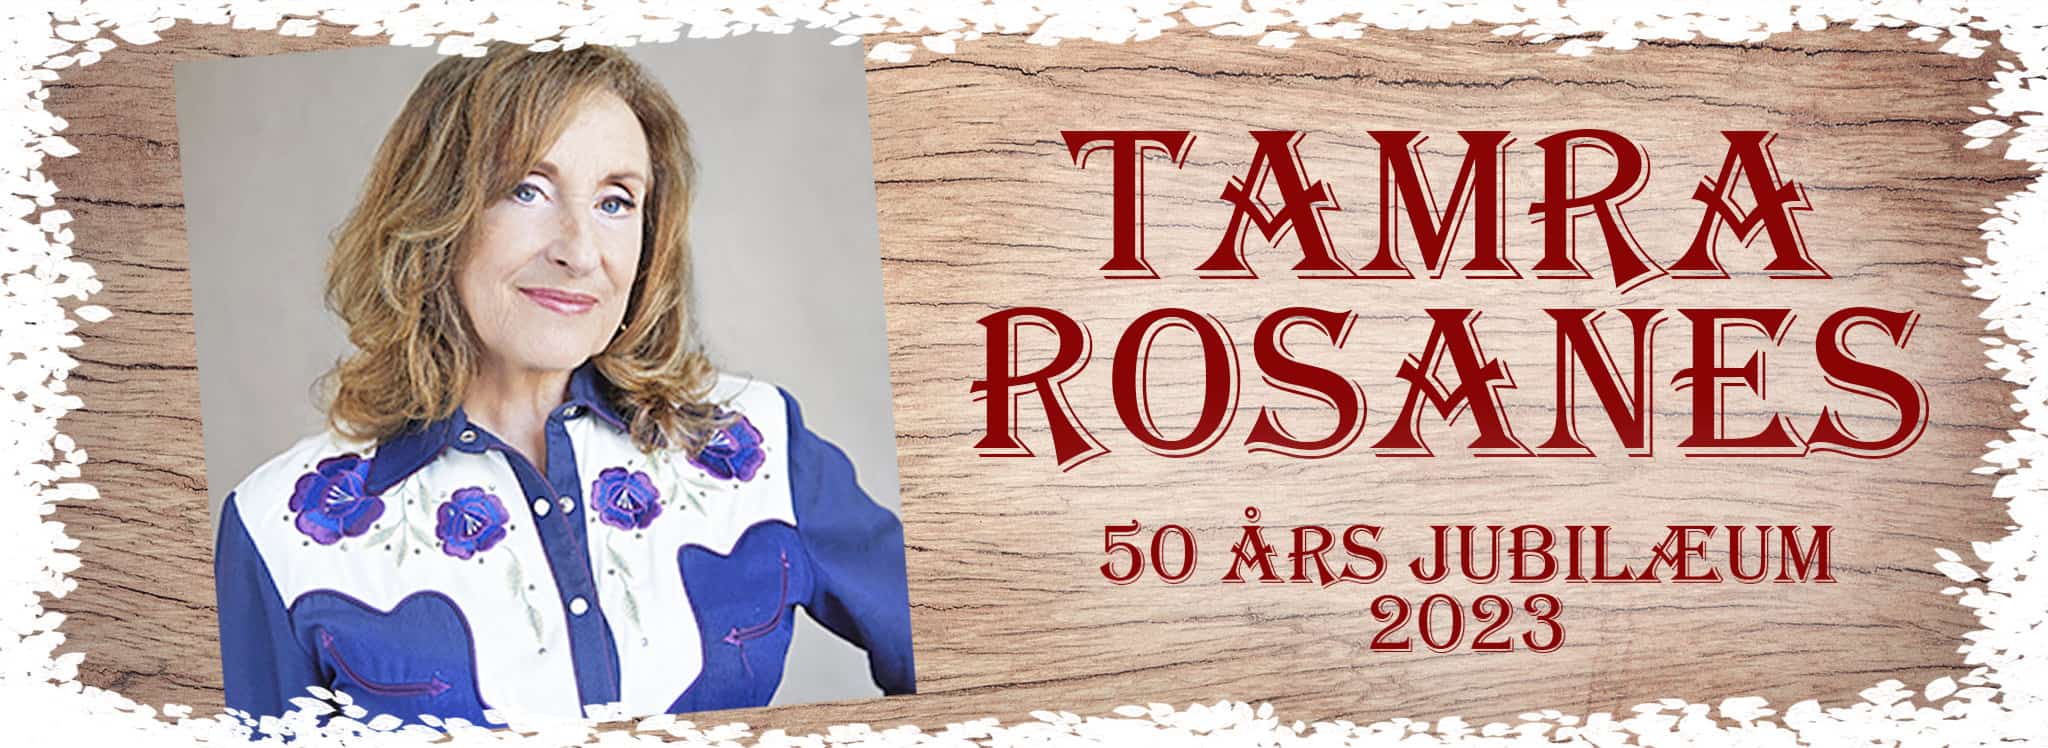 Tamra Rosanes 2022